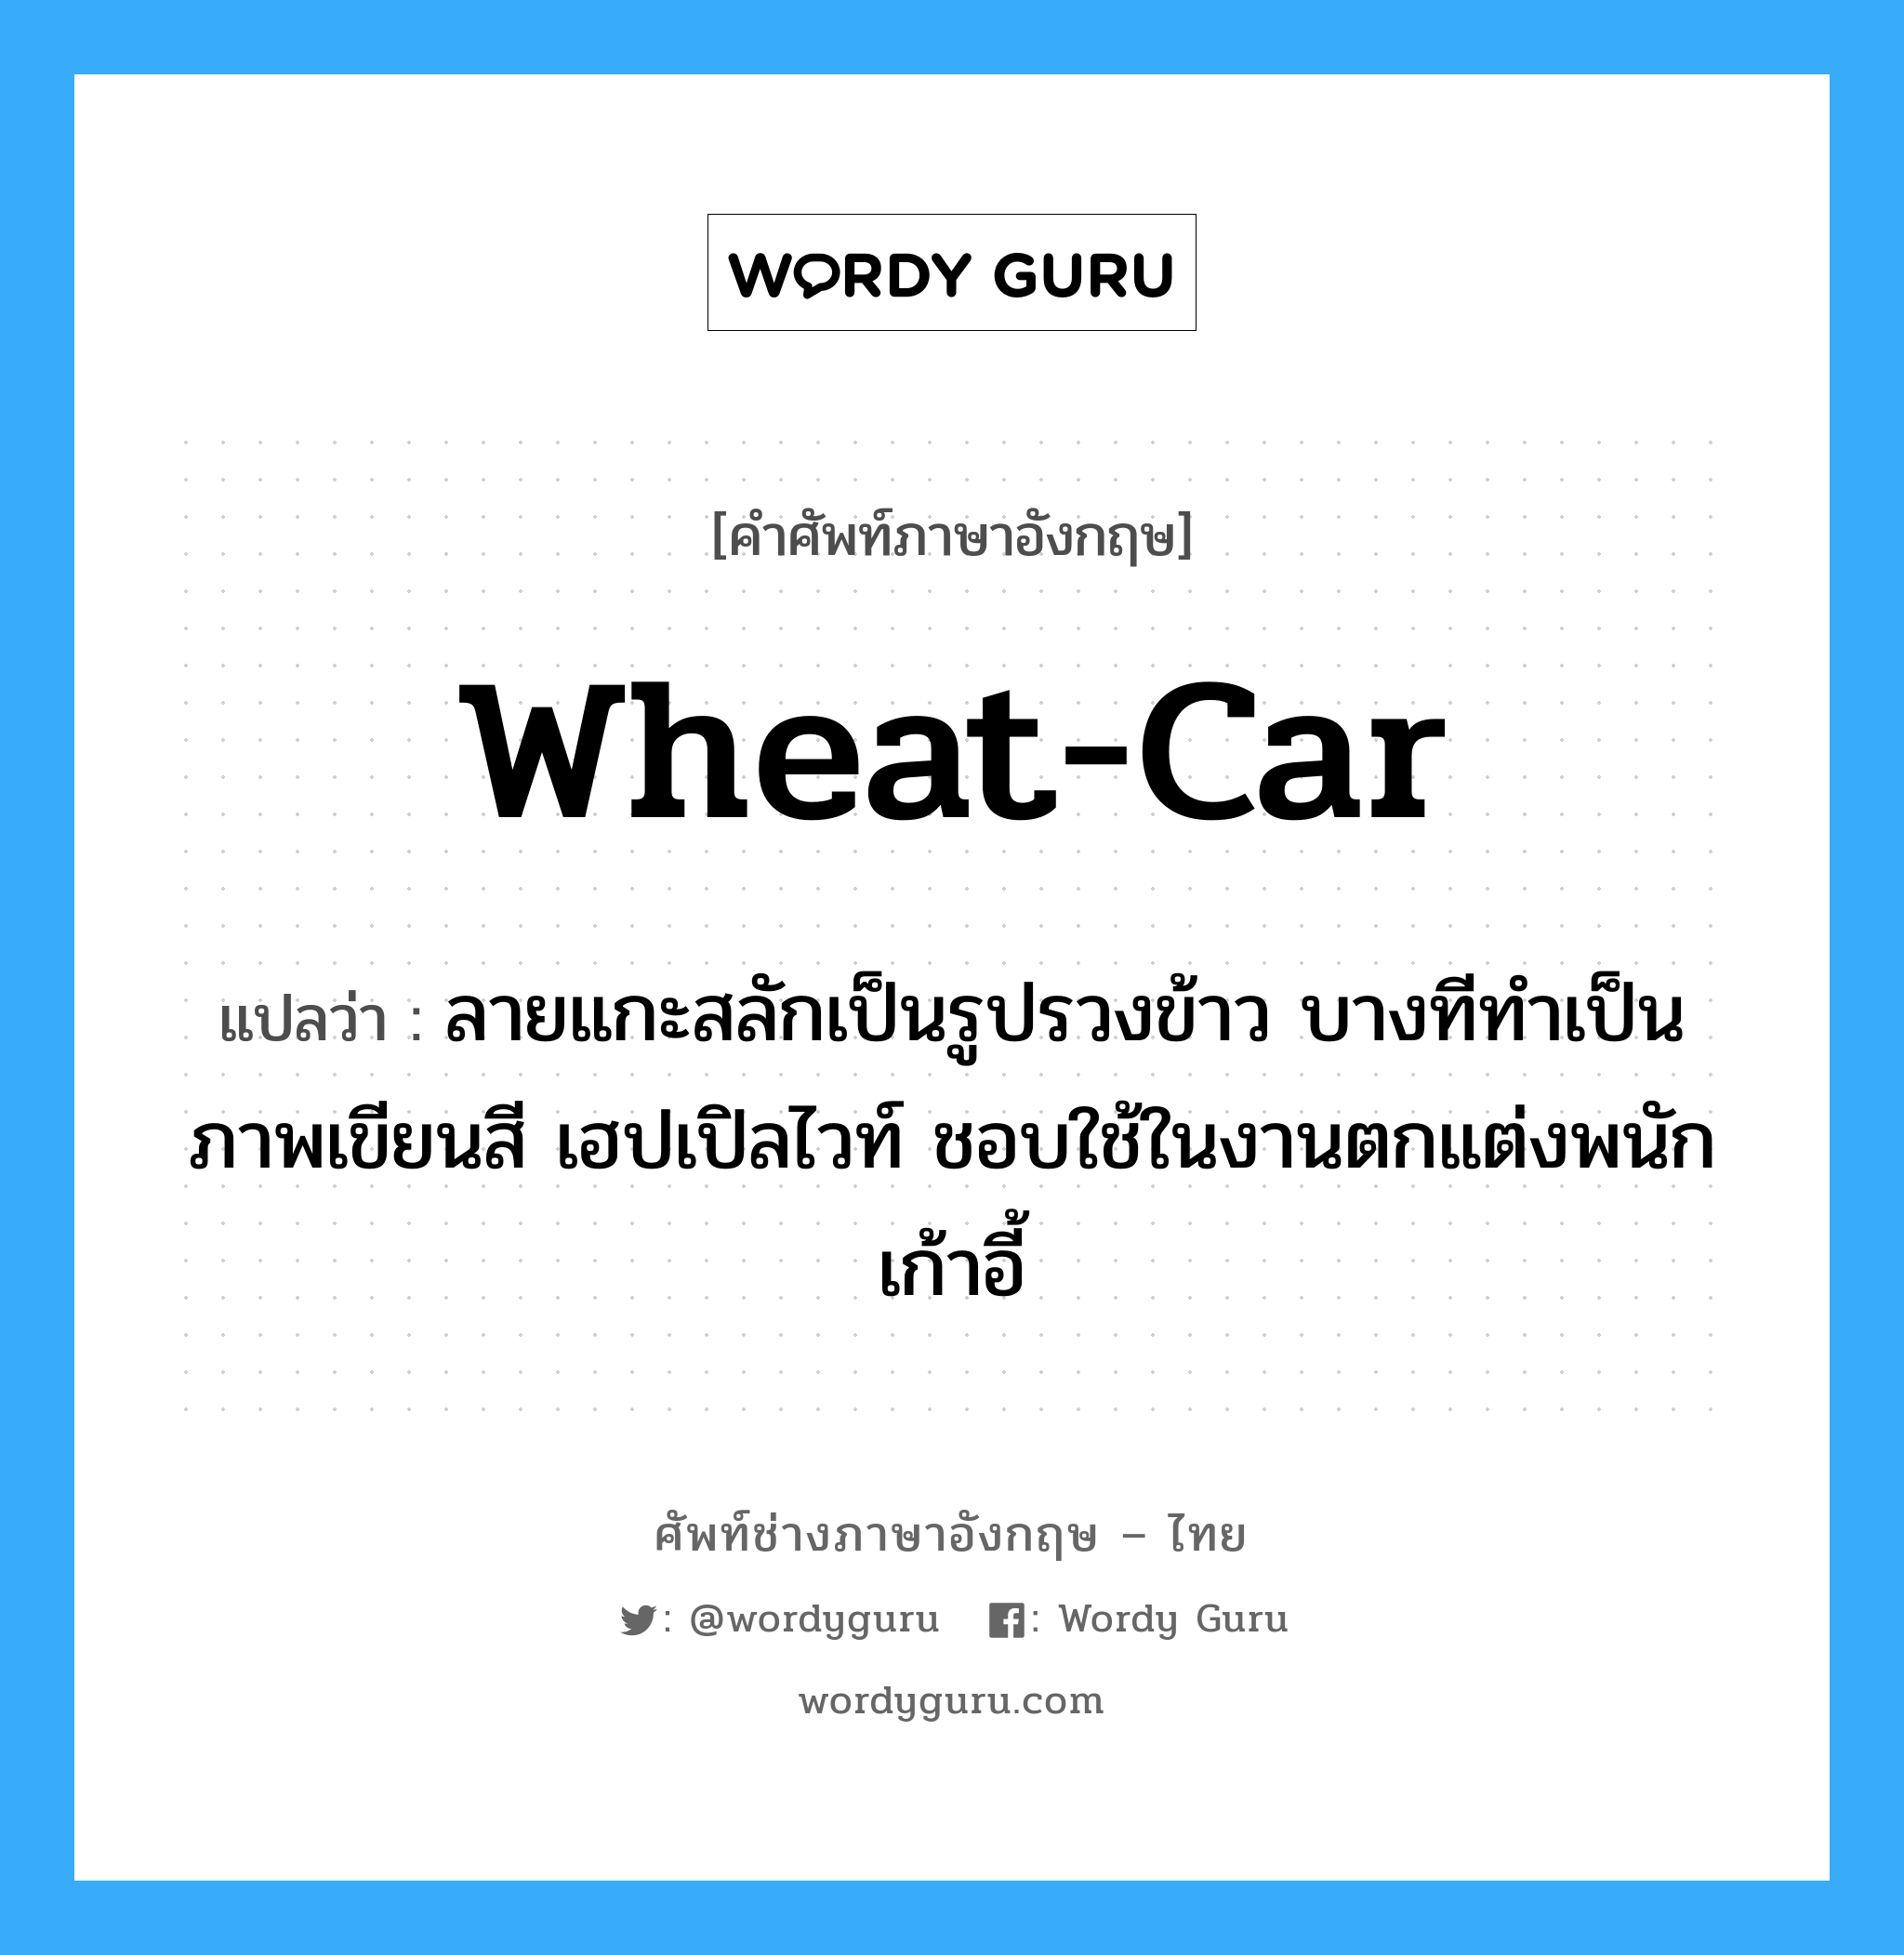 wheat-car แปลว่า?, คำศัพท์ช่างภาษาอังกฤษ - ไทย wheat-car คำศัพท์ภาษาอังกฤษ wheat-car แปลว่า ลายแกะสลักเป็นรูปรวงข้าว บางทีทำเป็นภาพเขียนสี เฮปเปิลไวท์ ชอบใช้ในงานตกแต่งพนักเก้าอี้